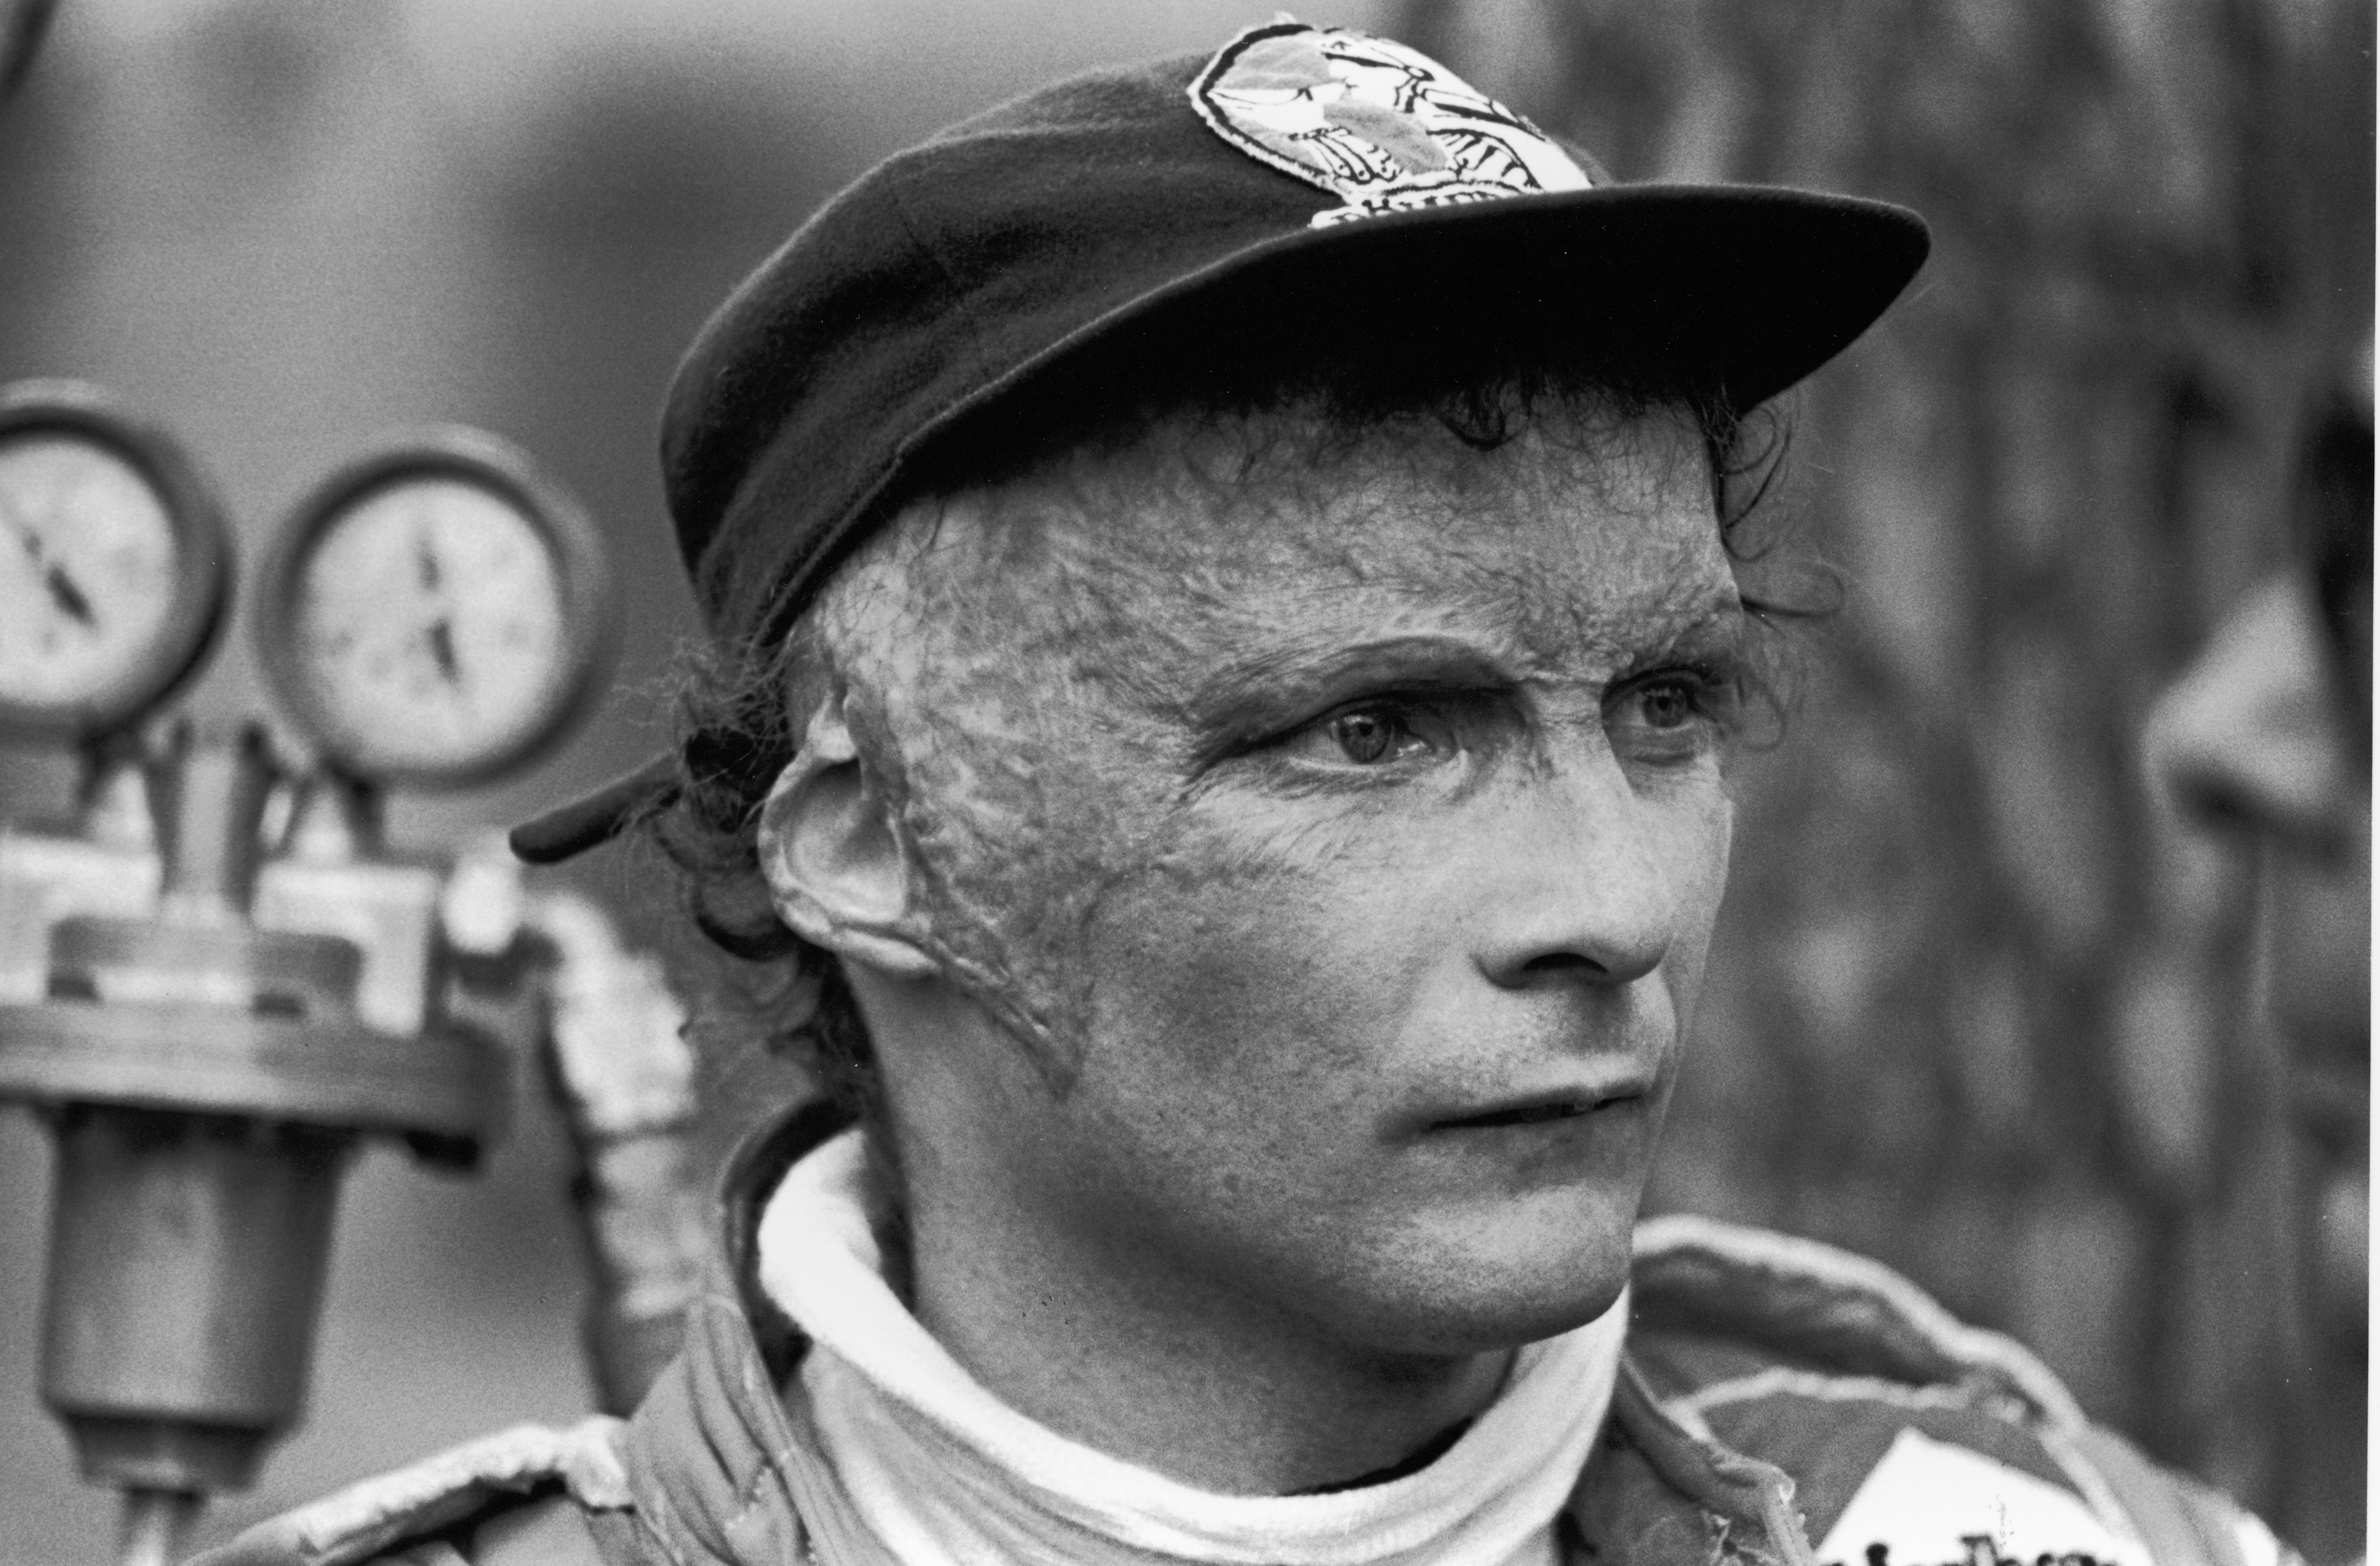 Képeken a legenda: így emlékezünk meg az elhunyt Niki Laudáról – galéria -  Blikk